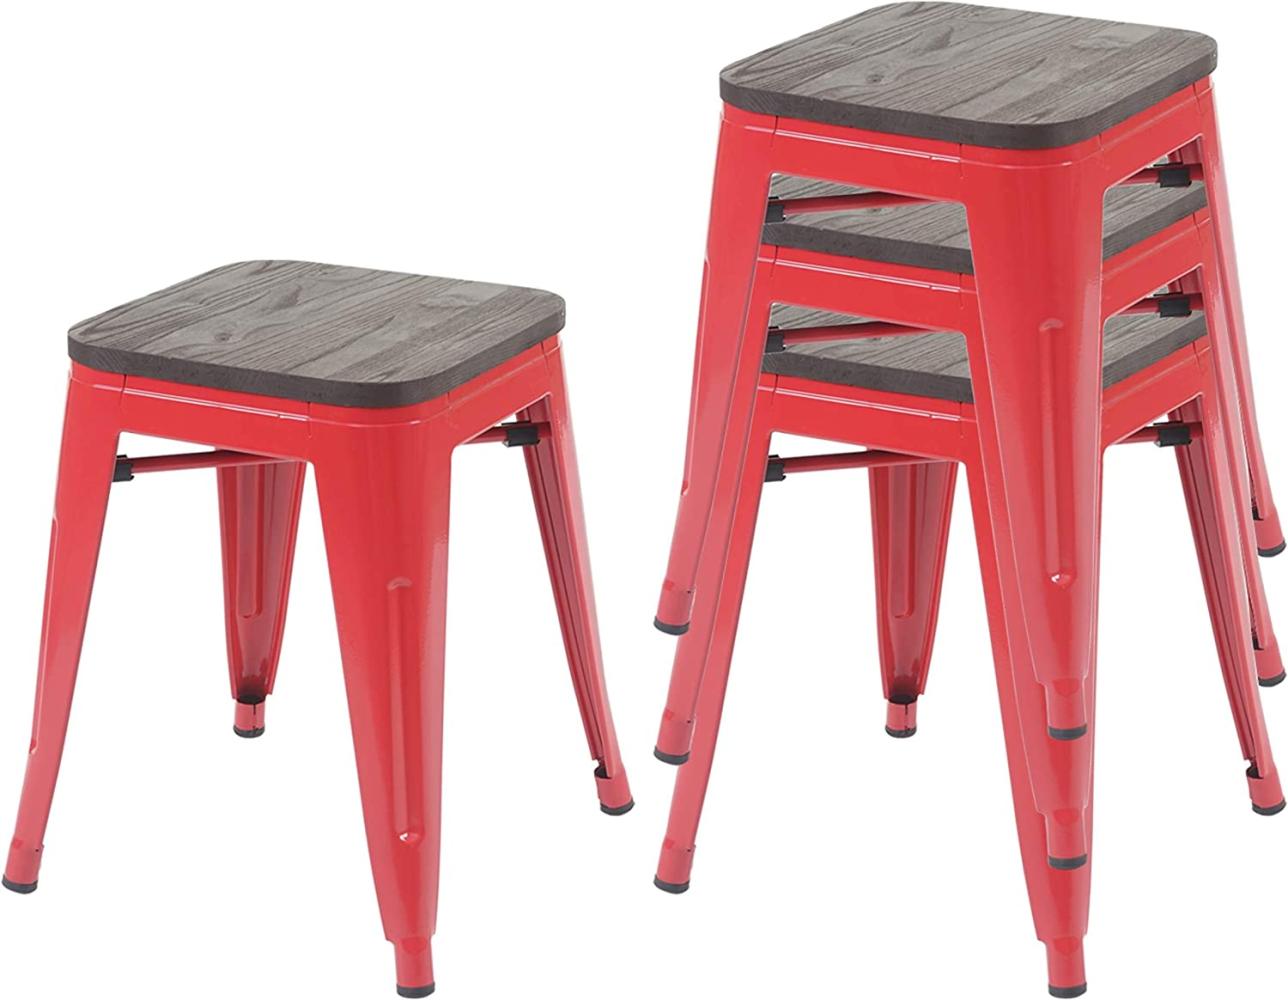 4er-Set Hocker HWC-A73 inkl. Holz-Sitzfläche, Metallhocker Sitzhocker, Metall Industriedesign stapelbar ~ rot Bild 1